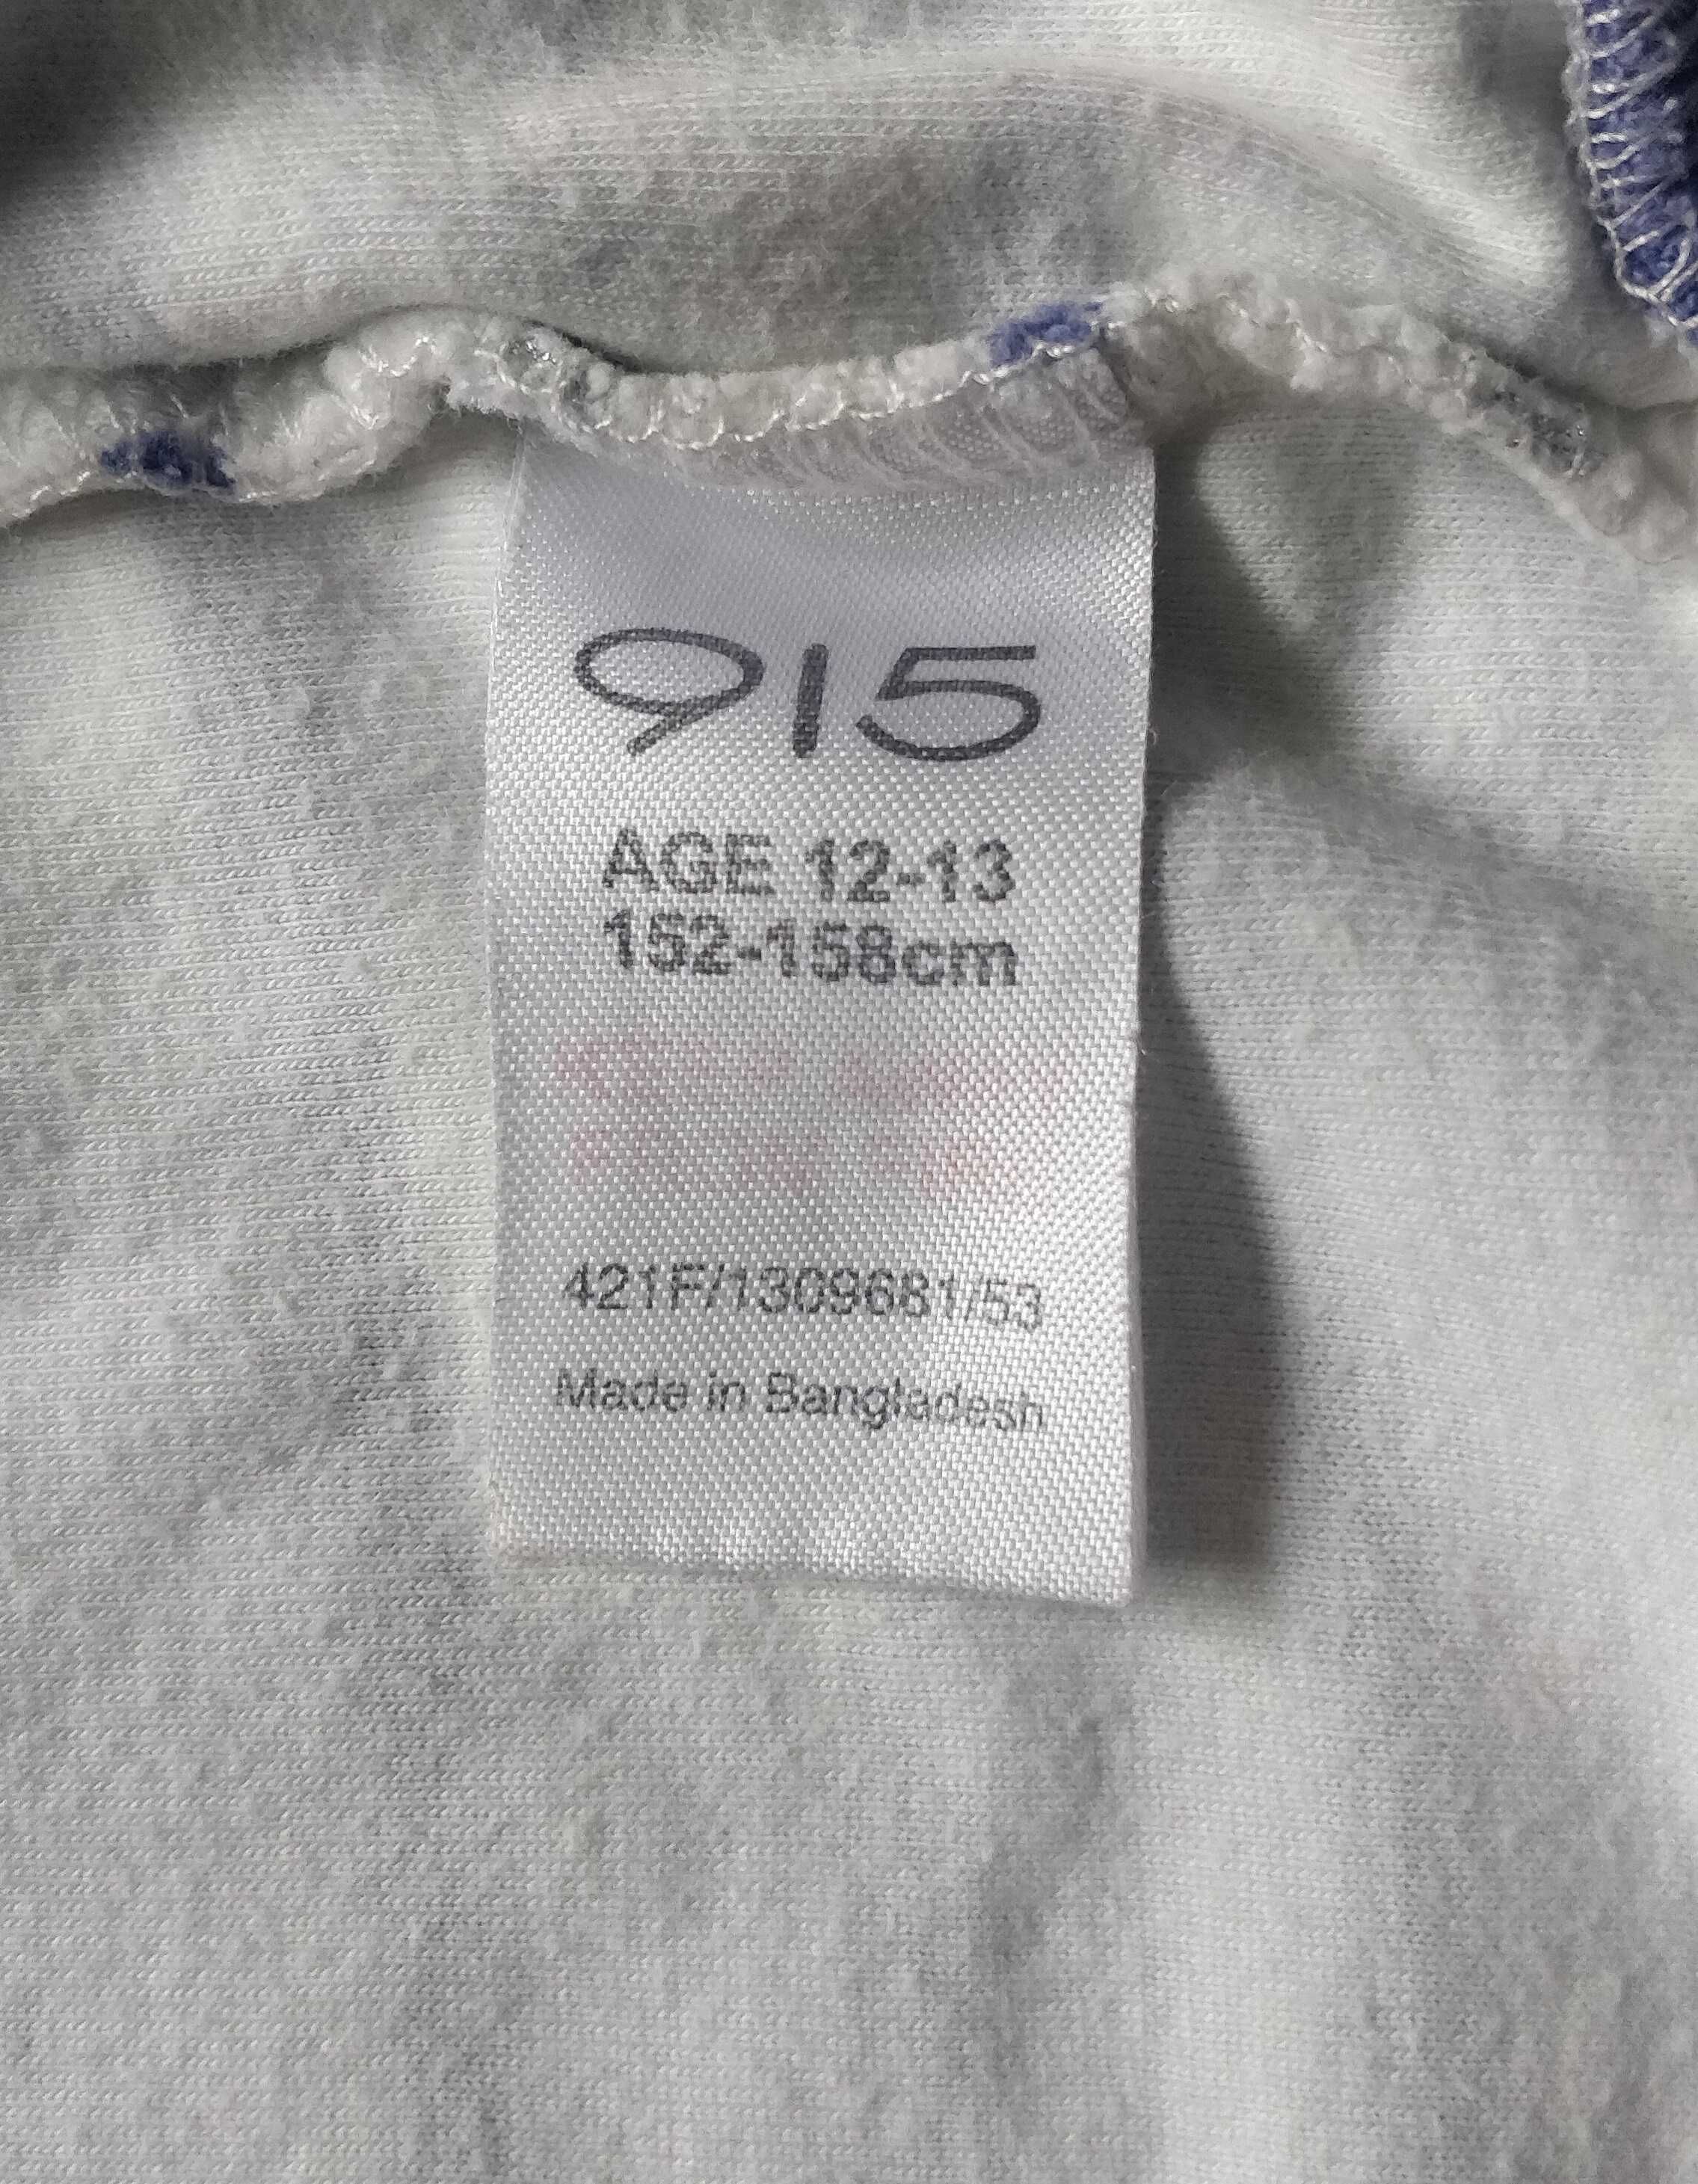 Bluza z kapturem Generation 915, r. 152-158 cm, 12-13 lat, dziewczęca.